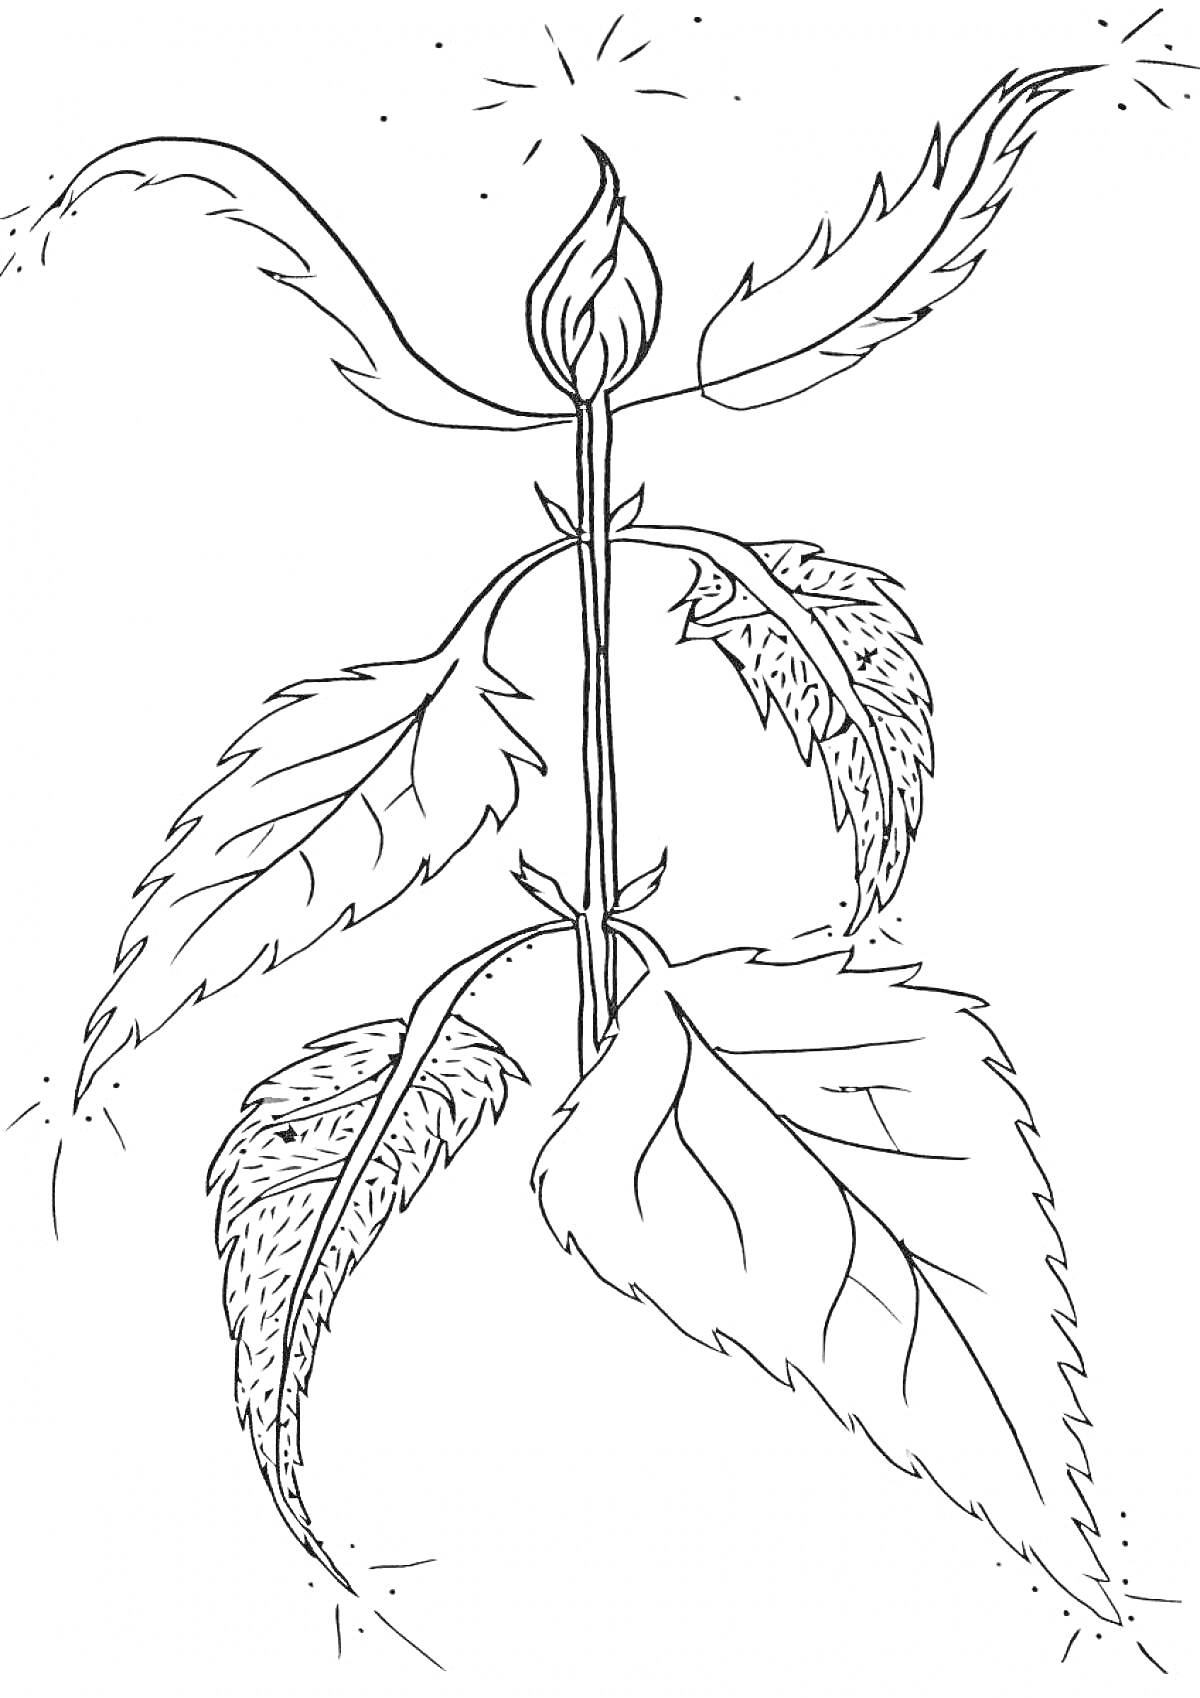 Рисунок крапивы с листьями и стеблем.